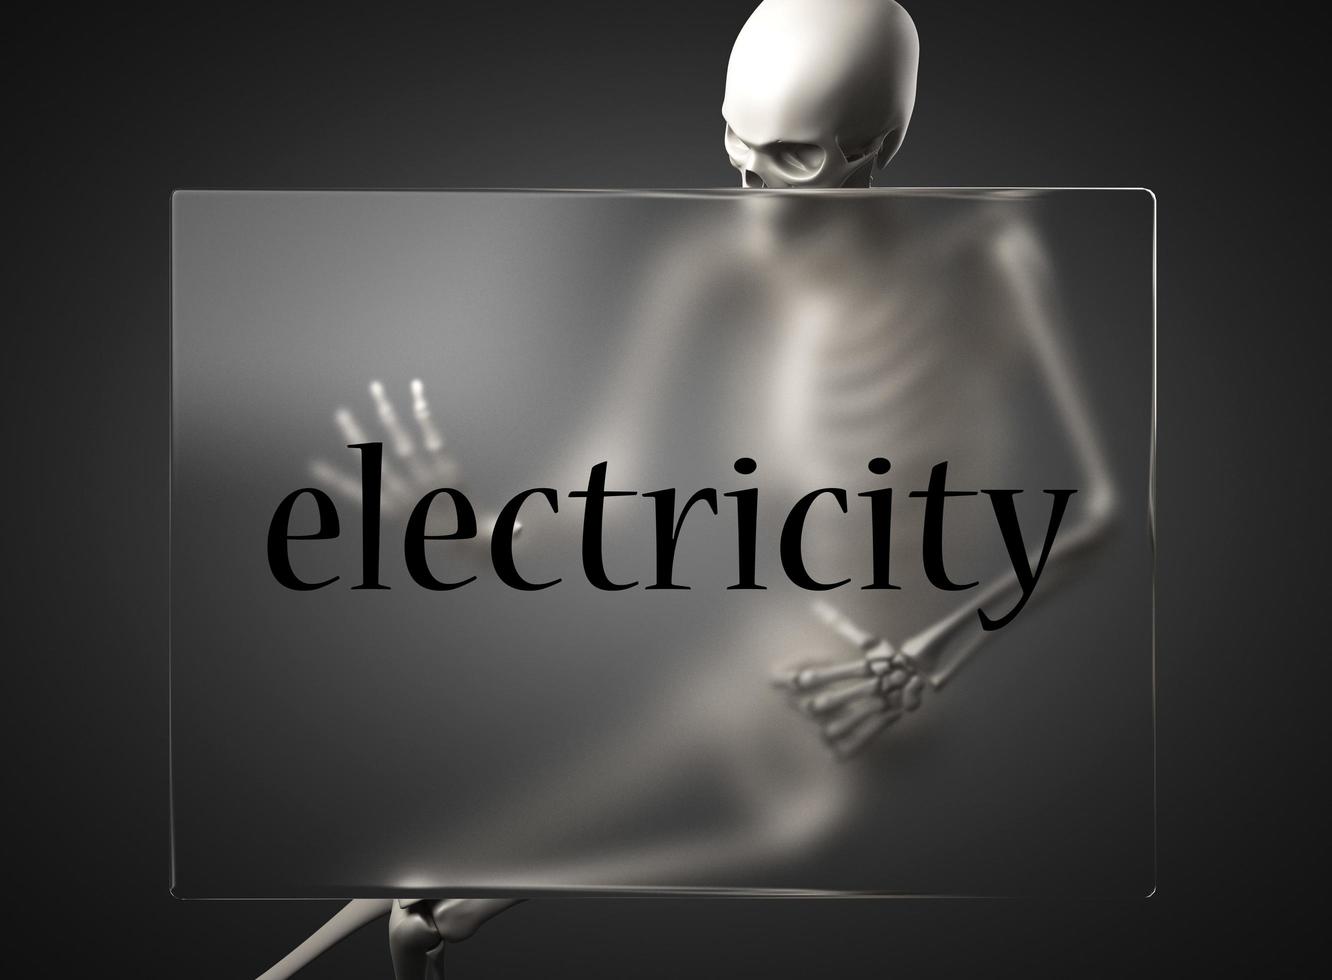 palabra de electricidad en vidrio y esqueleto foto